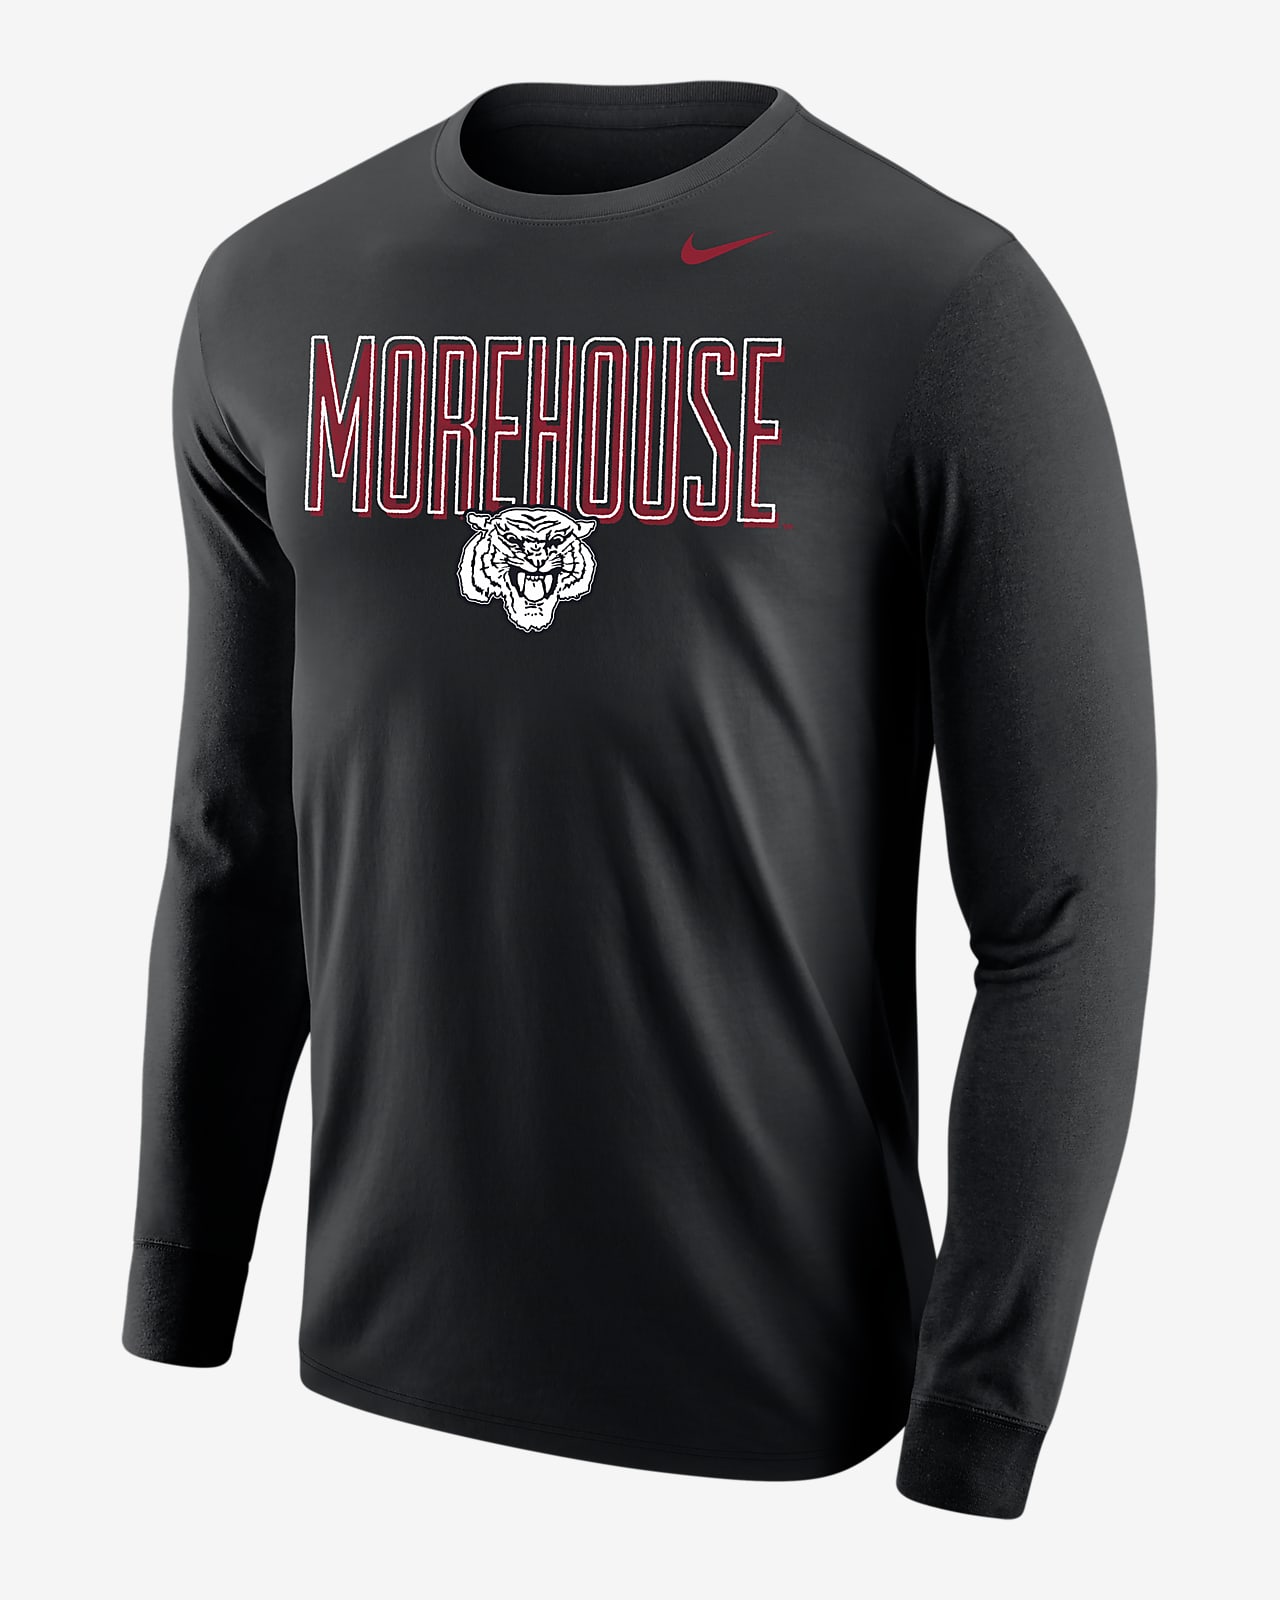 Nike College (Morehouse) Men's Long-Sleeve T-Shirt